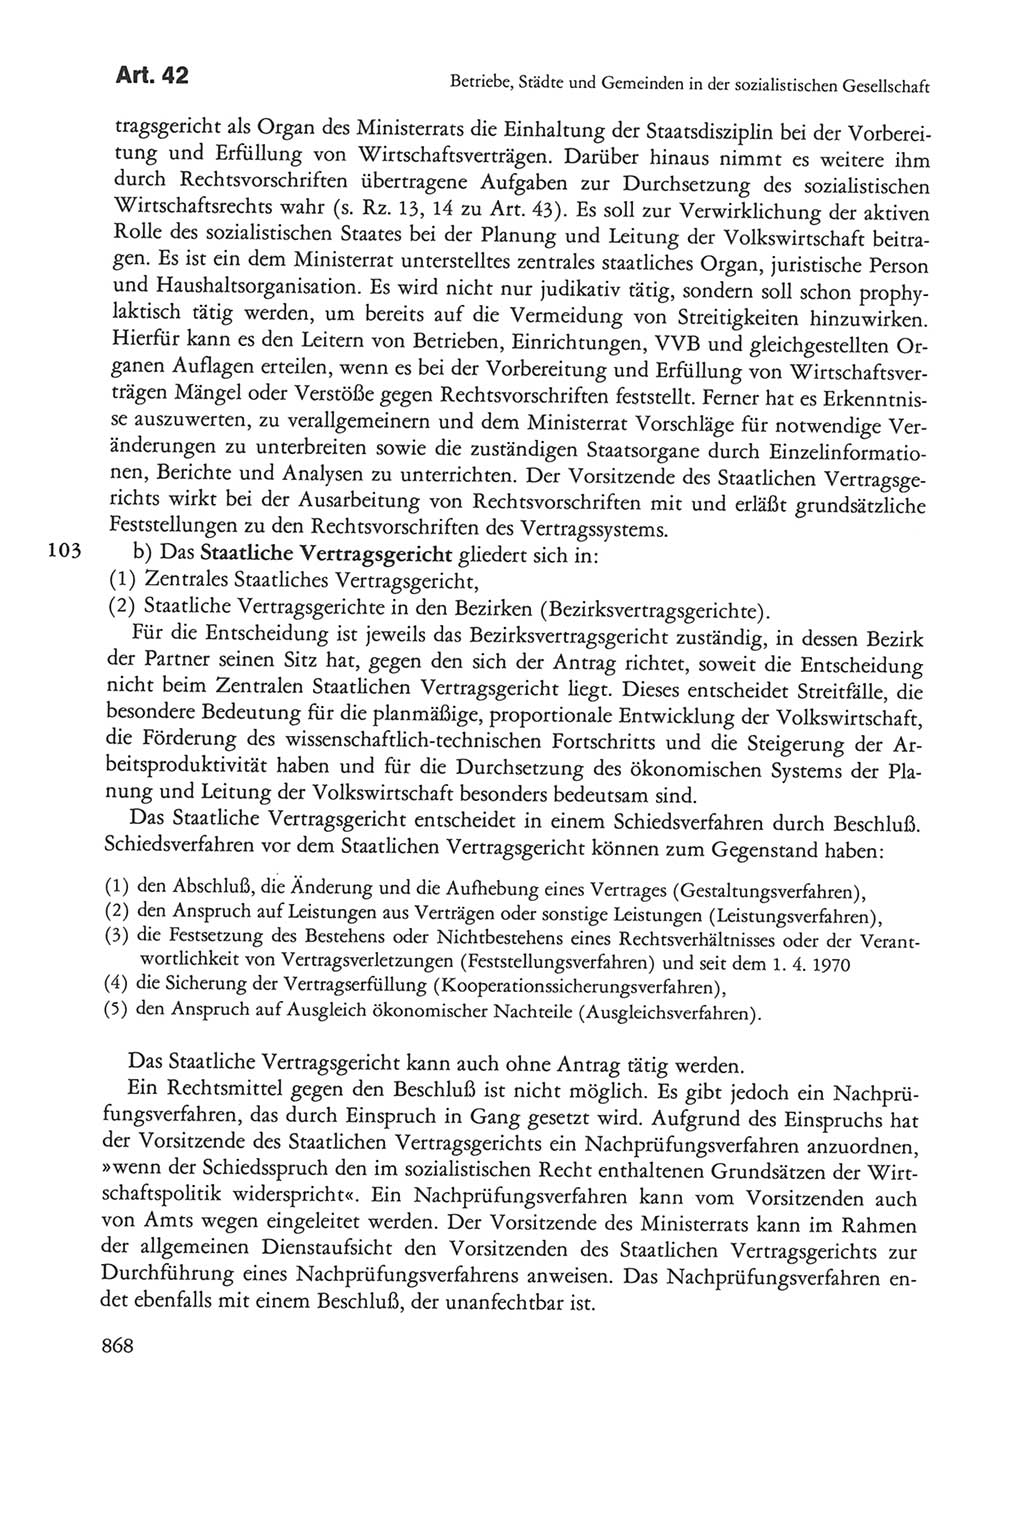 Die sozialistische Verfassung der Deutschen Demokratischen Republik (DDR), Kommentar 1982, Seite 868 (Soz. Verf. DDR Komm. 1982, S. 868)